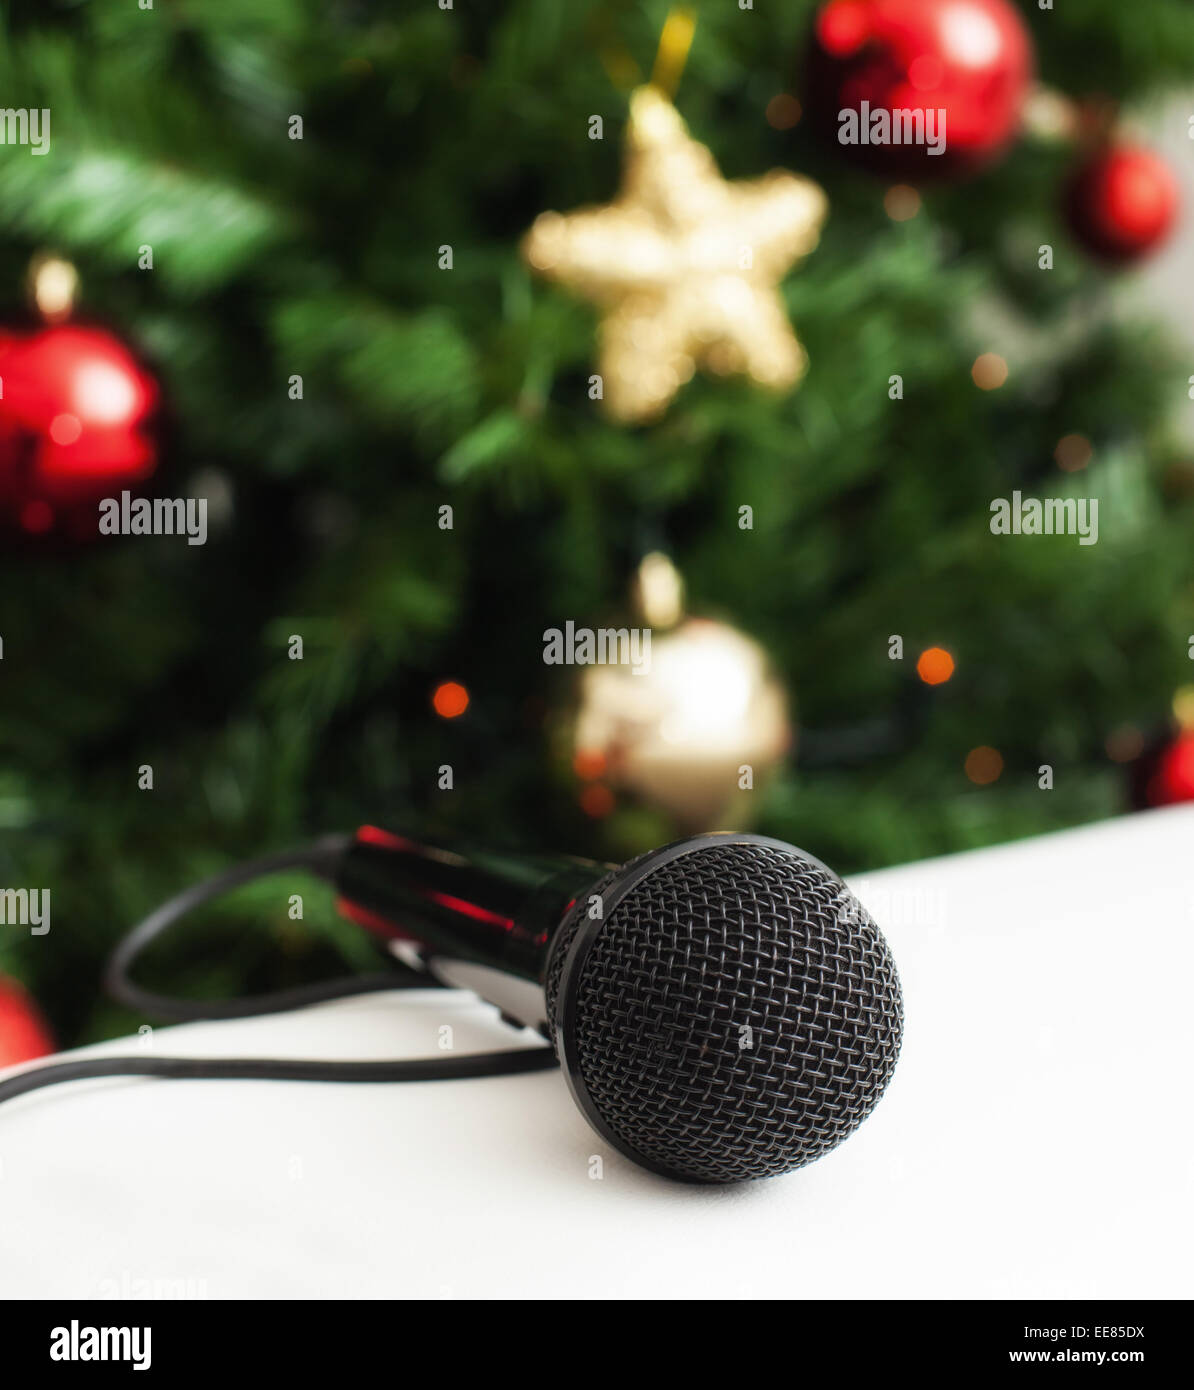 Microphone noir sur blanc canapé en cuir près de l'arbre de Noël. Concept de chanson de Noël la musique. Banque D'Images